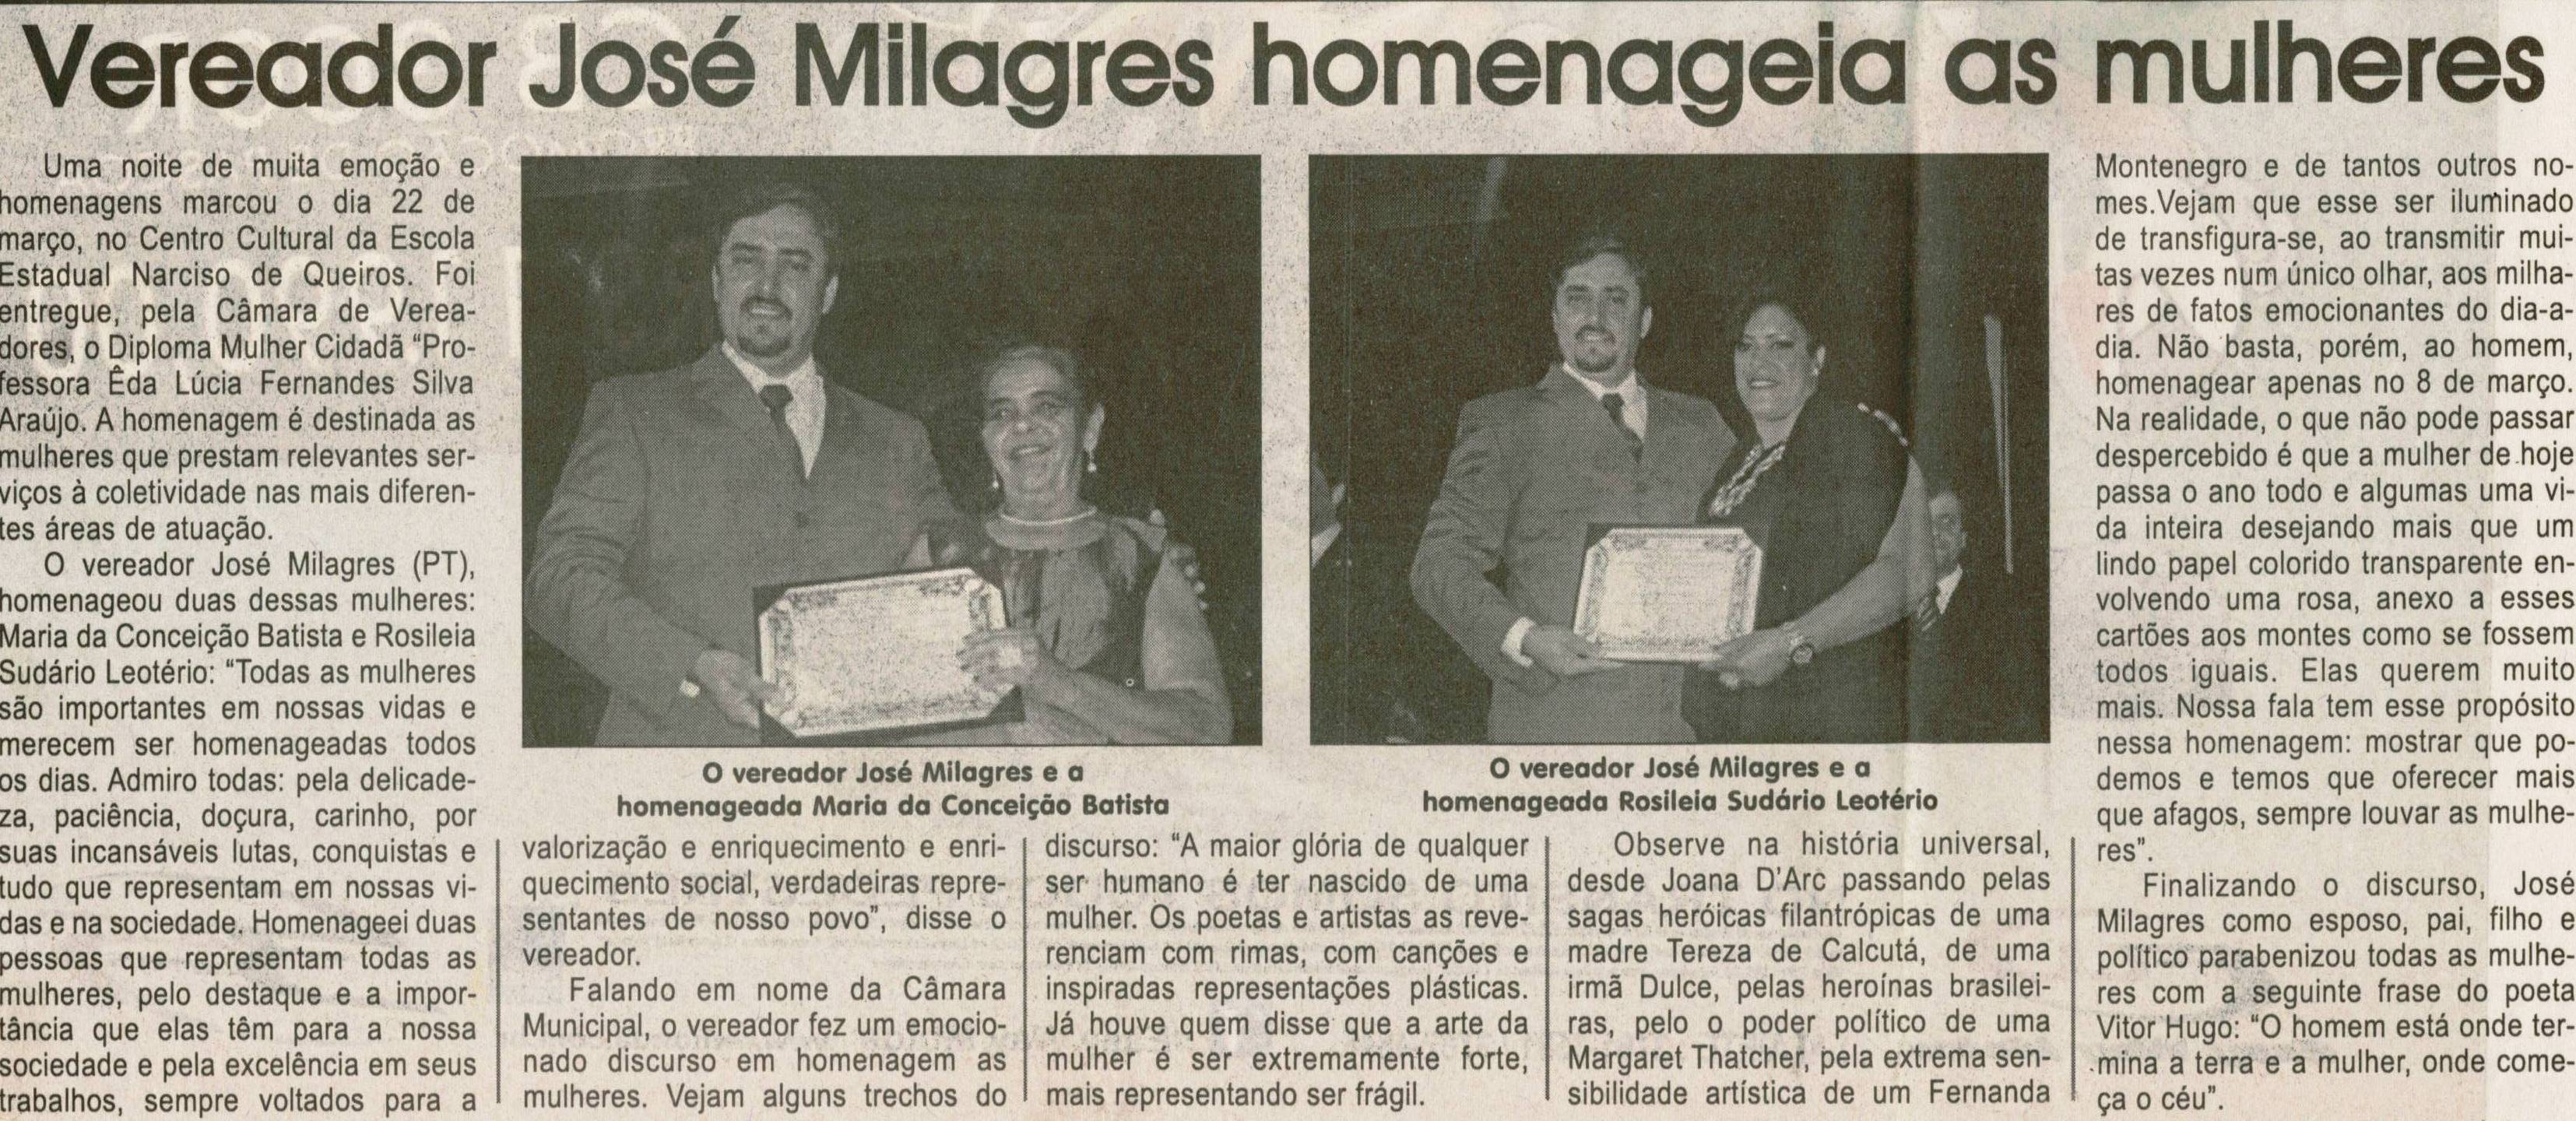 Vereador José Milagres homenageia as mulheres. Jornal Correio da Cidade, Conselheiro Lafaiete, 07 abr. 2012,  p. 04.